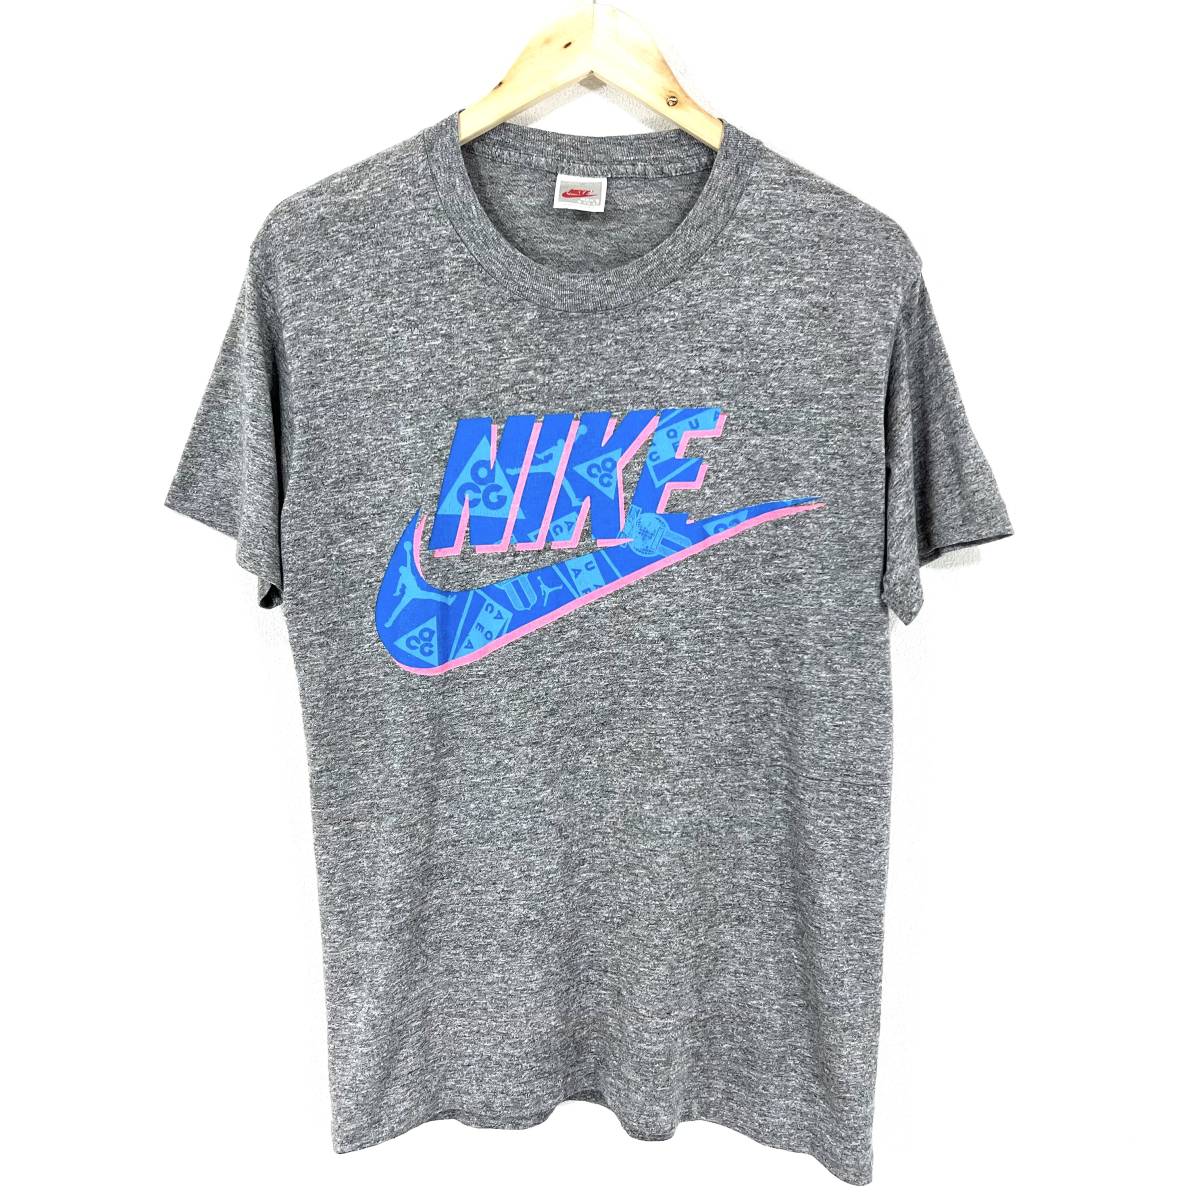 日本限定 90s Nike air acg 2展セットオレンジ 希少 半袖 tシャツ 古着 